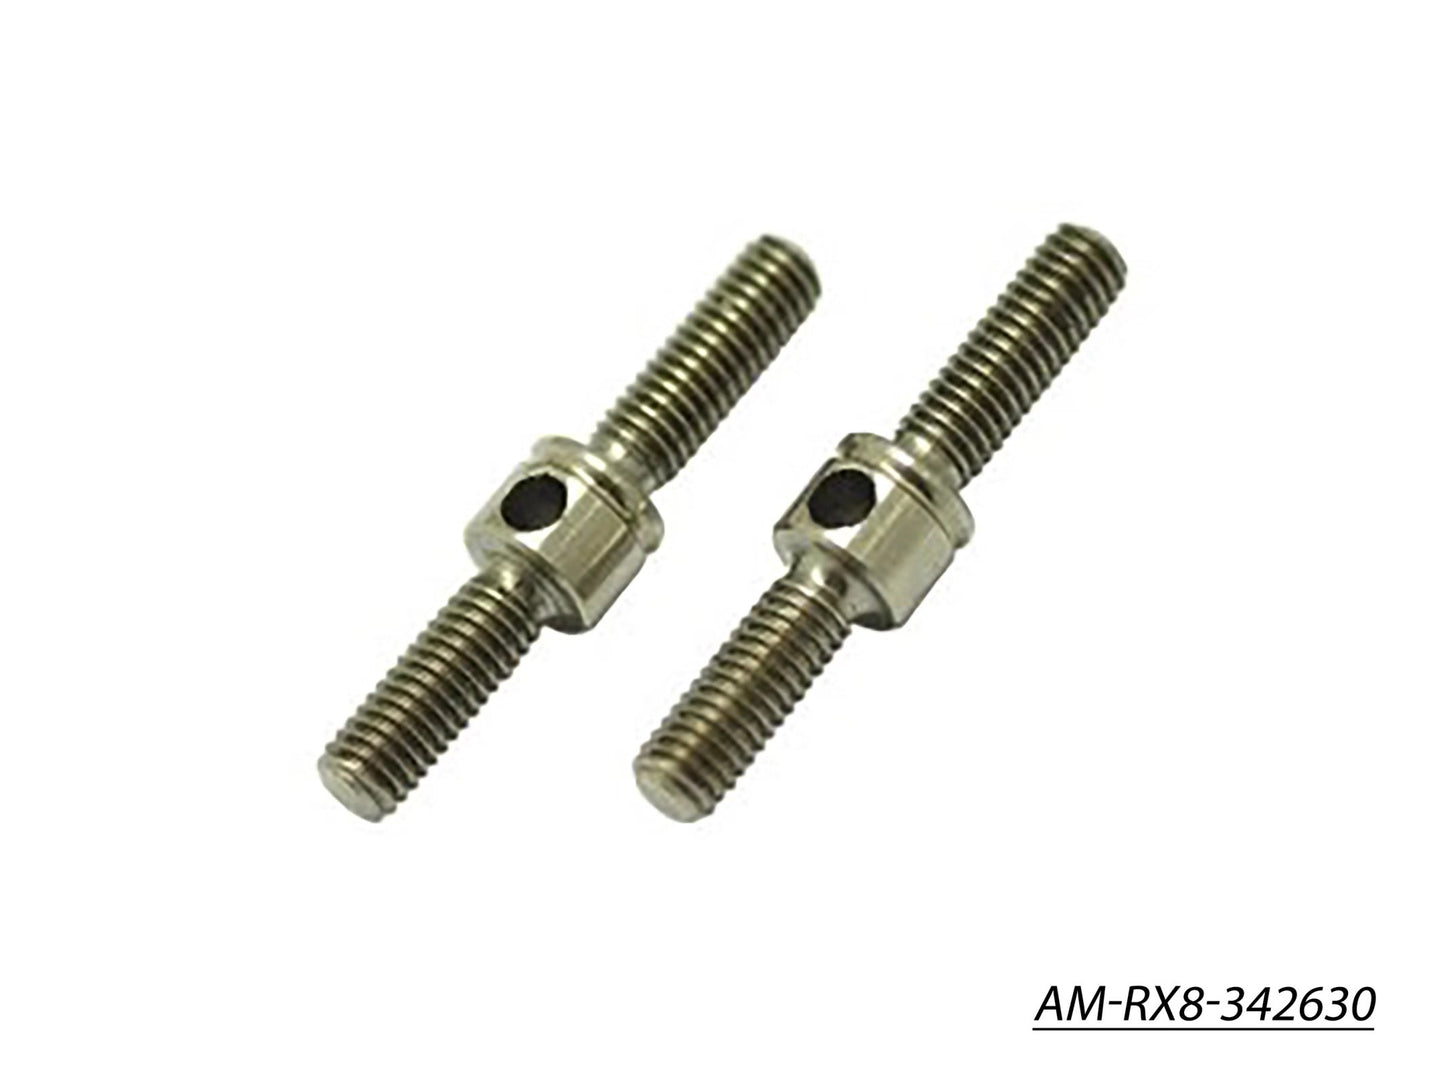 Adj.Turnbuckle L/R 20MM (Titanium) (2) (AM-RX8-342630)